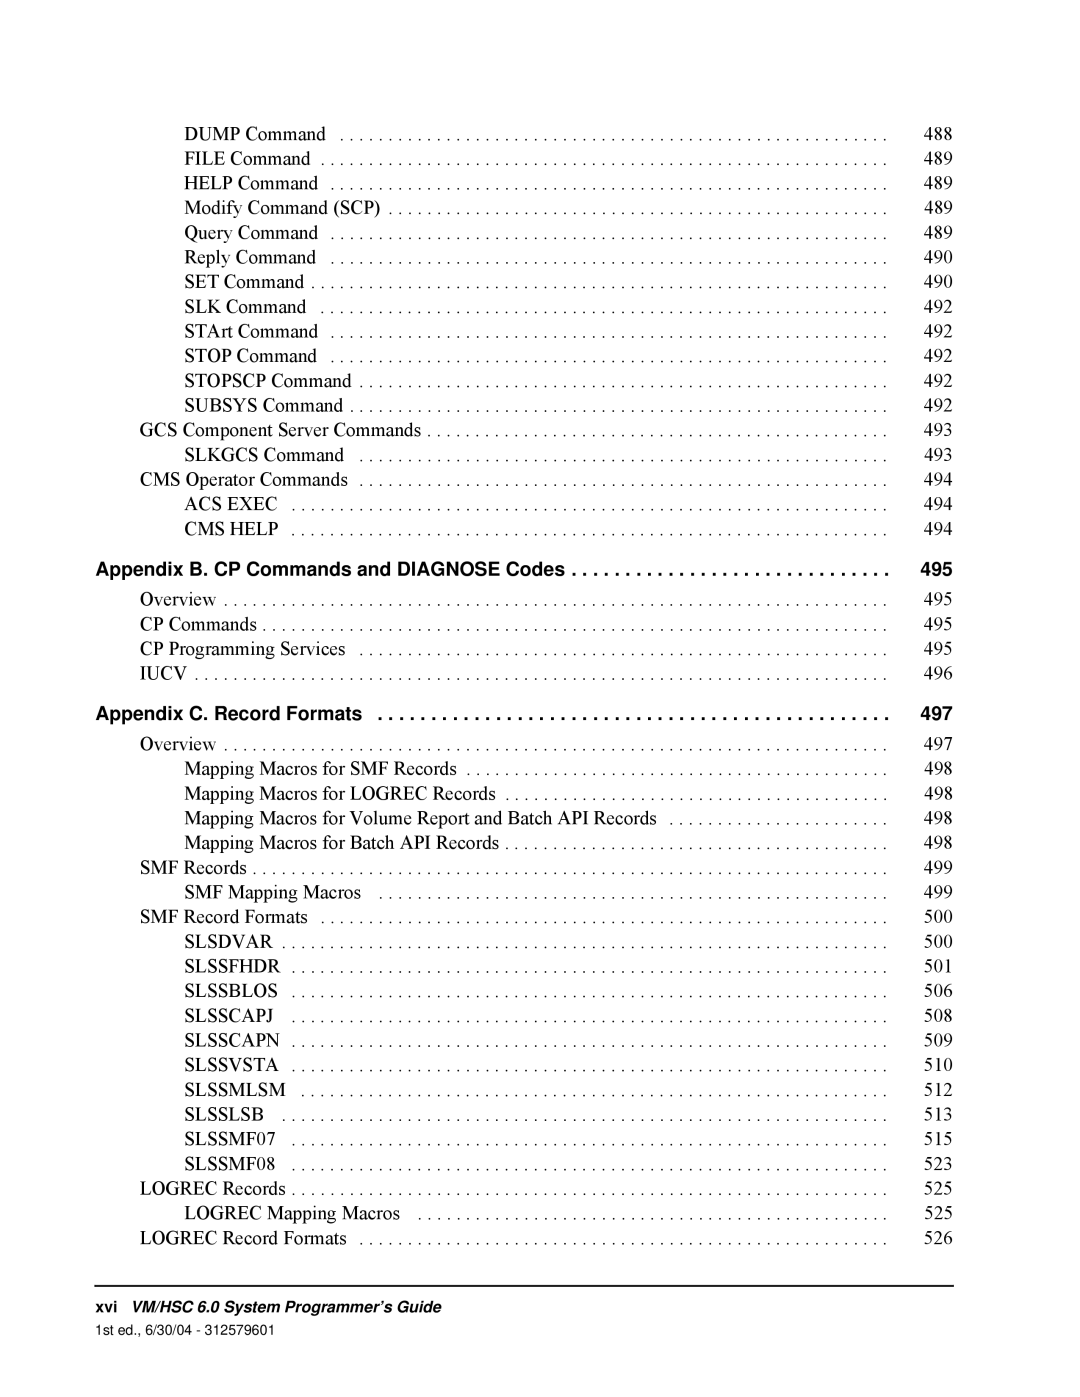 StorageTek 6 manual Appendix B. CP Commands and DIAGNOSE Codes, Appendix C. Record Formats 